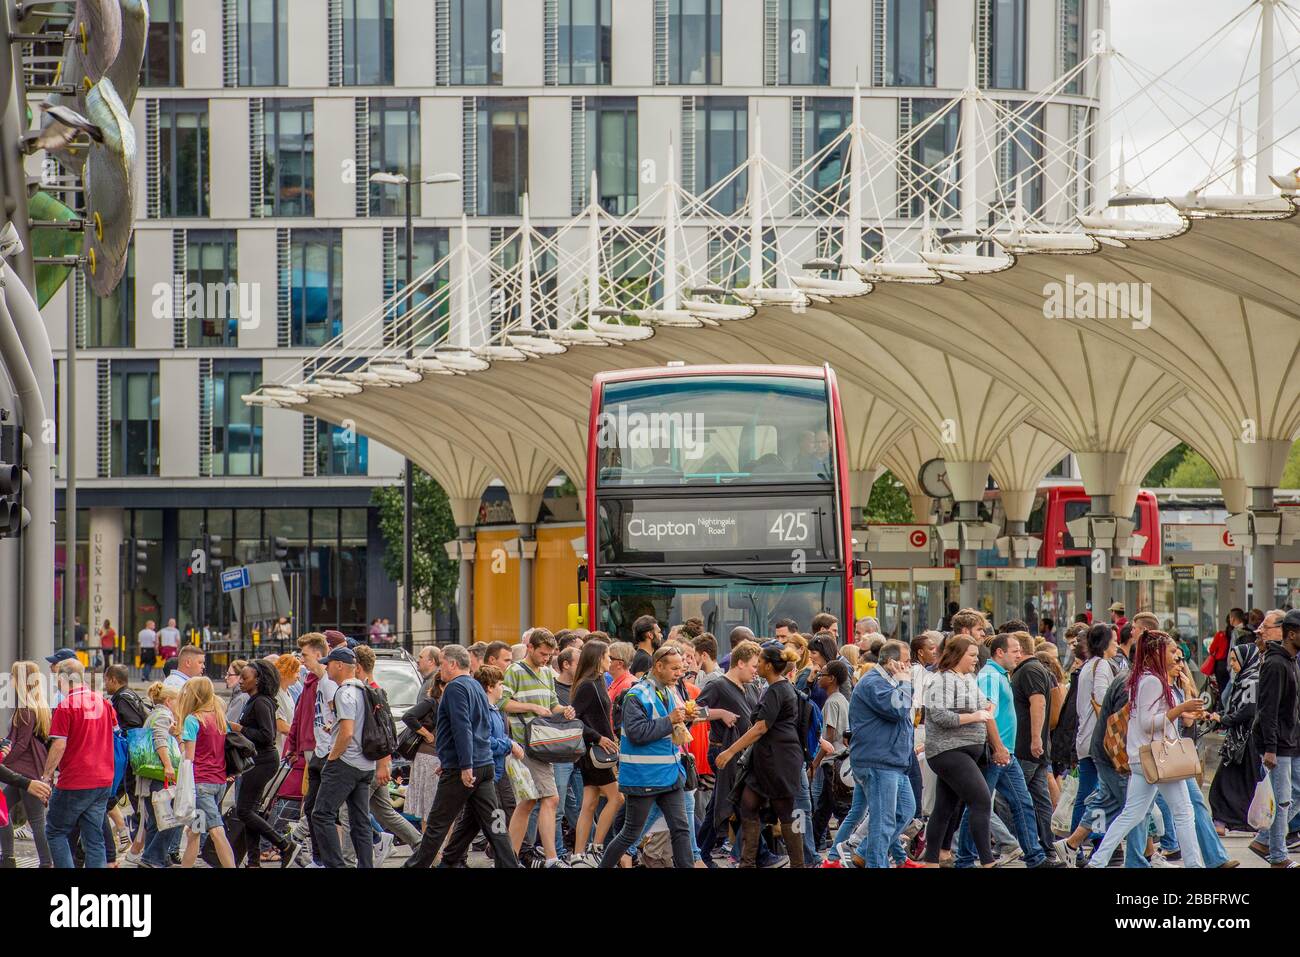 Des foules de clients traversent la rue entre la gare de Stratford et le centre commercial Stratford Center pendant une journée estivale ensoleillée. Un bus londonien attend. Banque D'Images